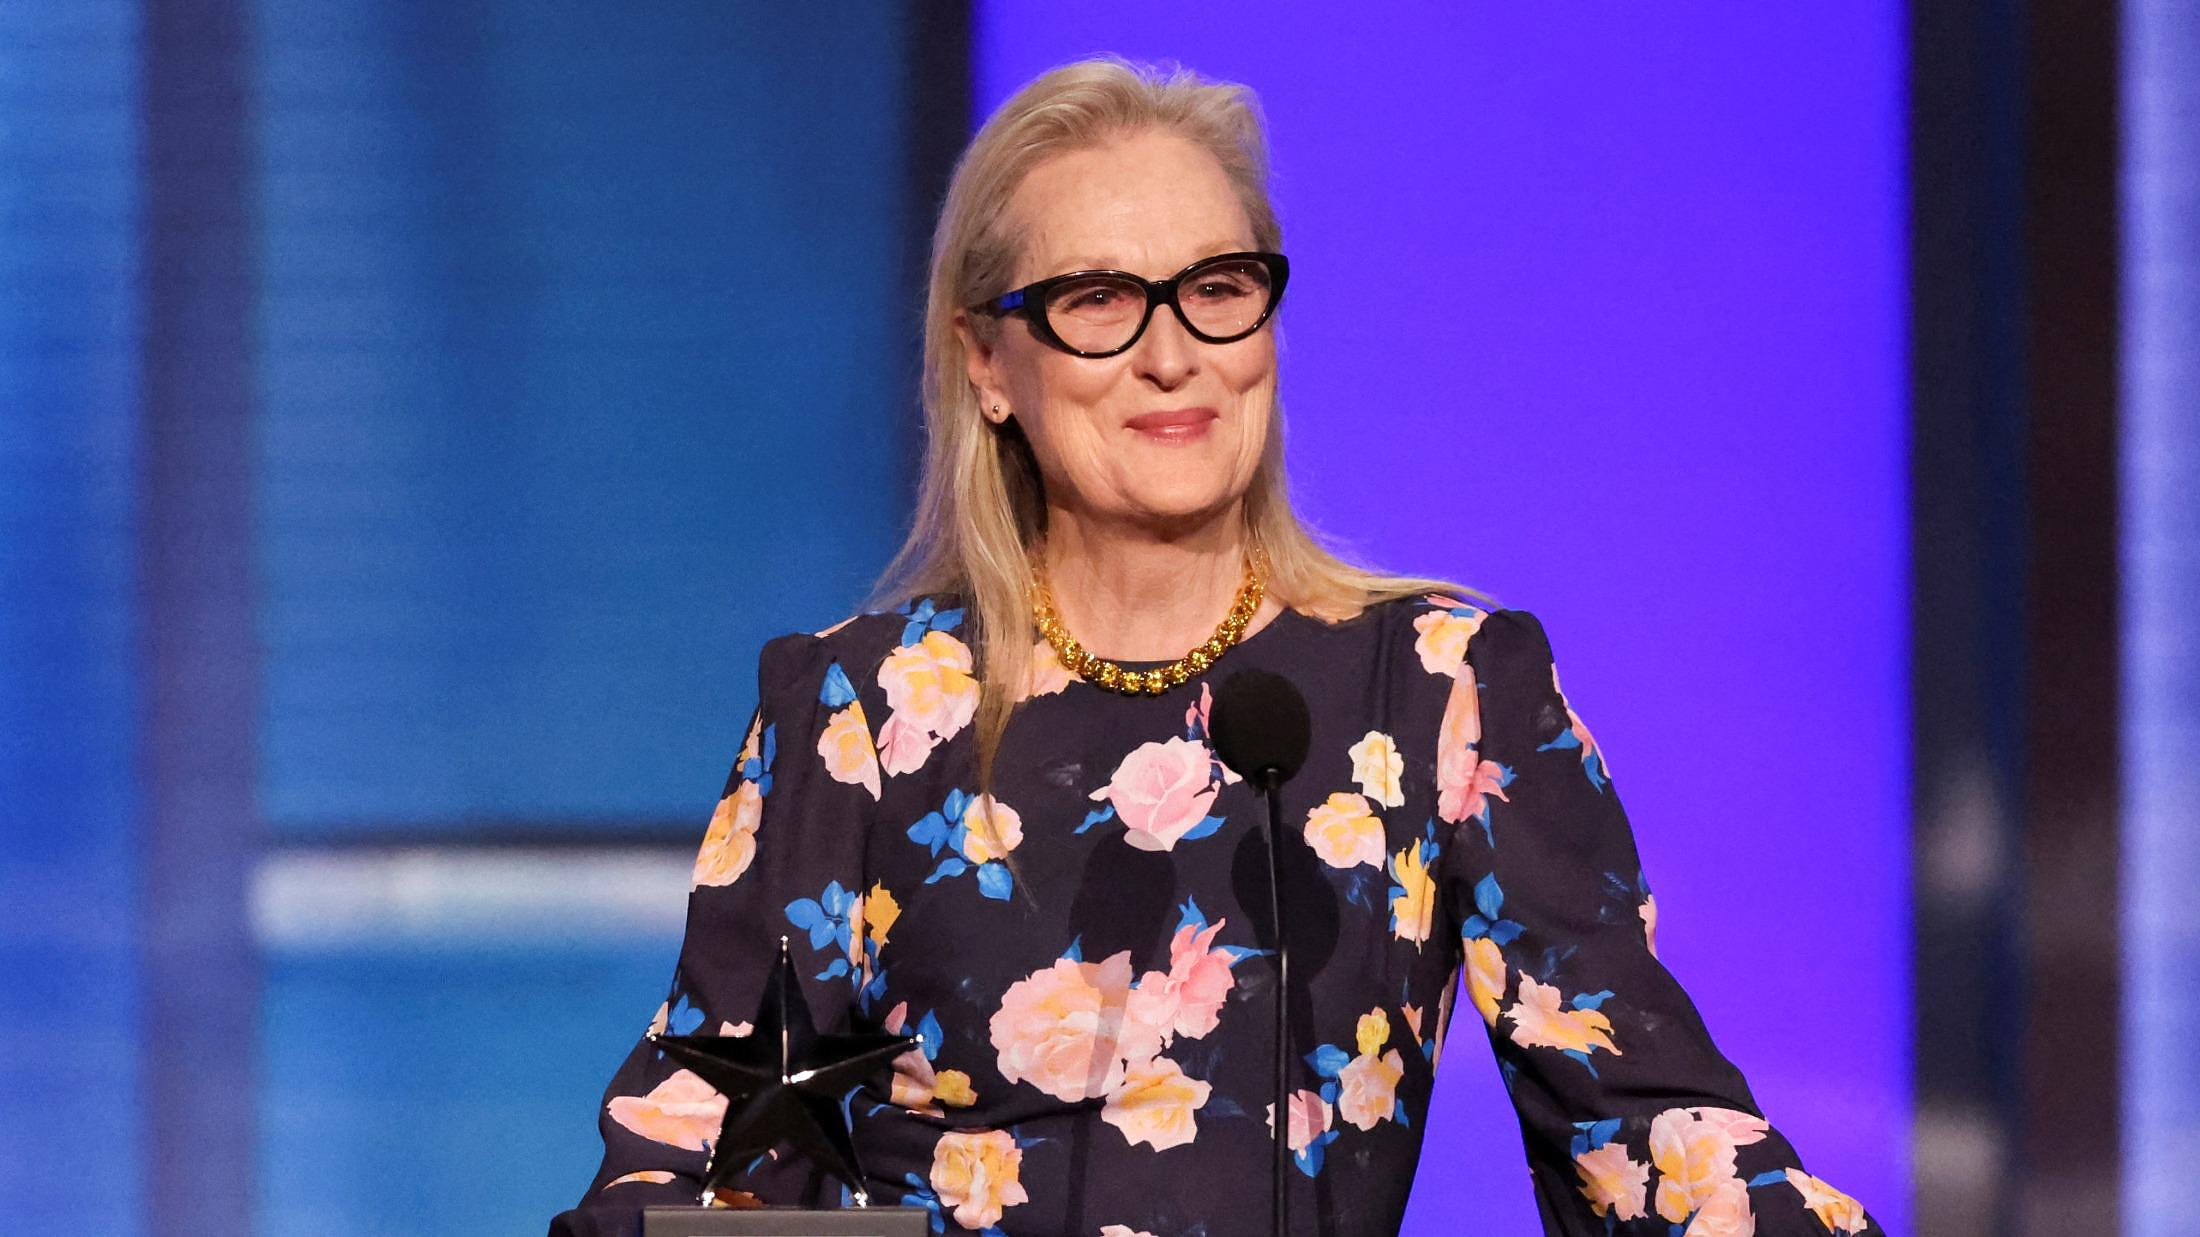 Cannes Film Festival: Meryl Streep awarded an honorary Palme d’Or